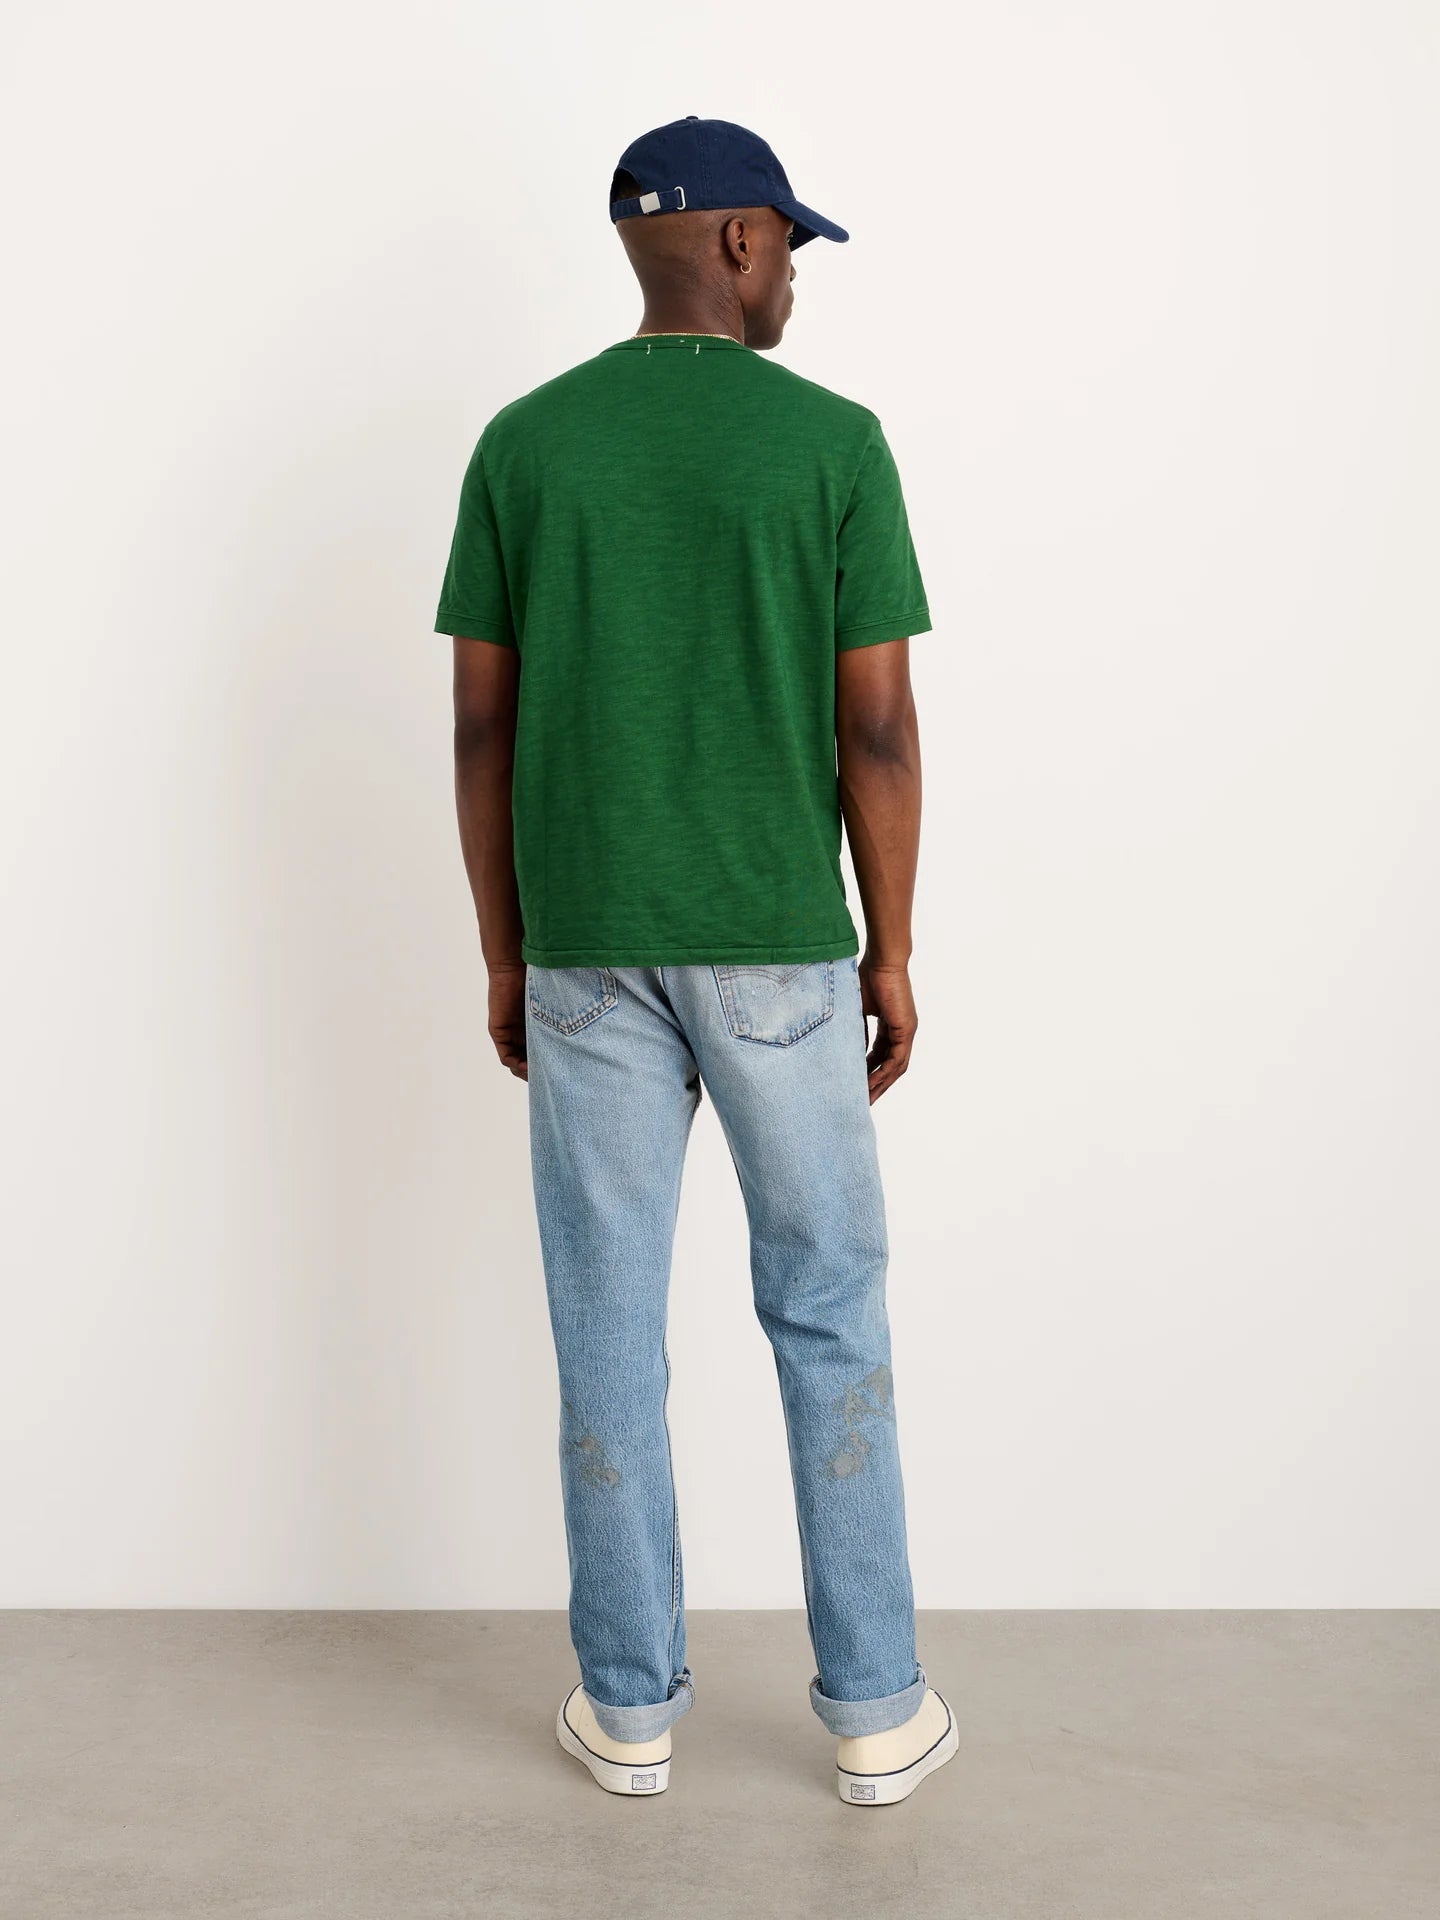 Alex Mill Standard T Shirt in Slub Cotton Emerald